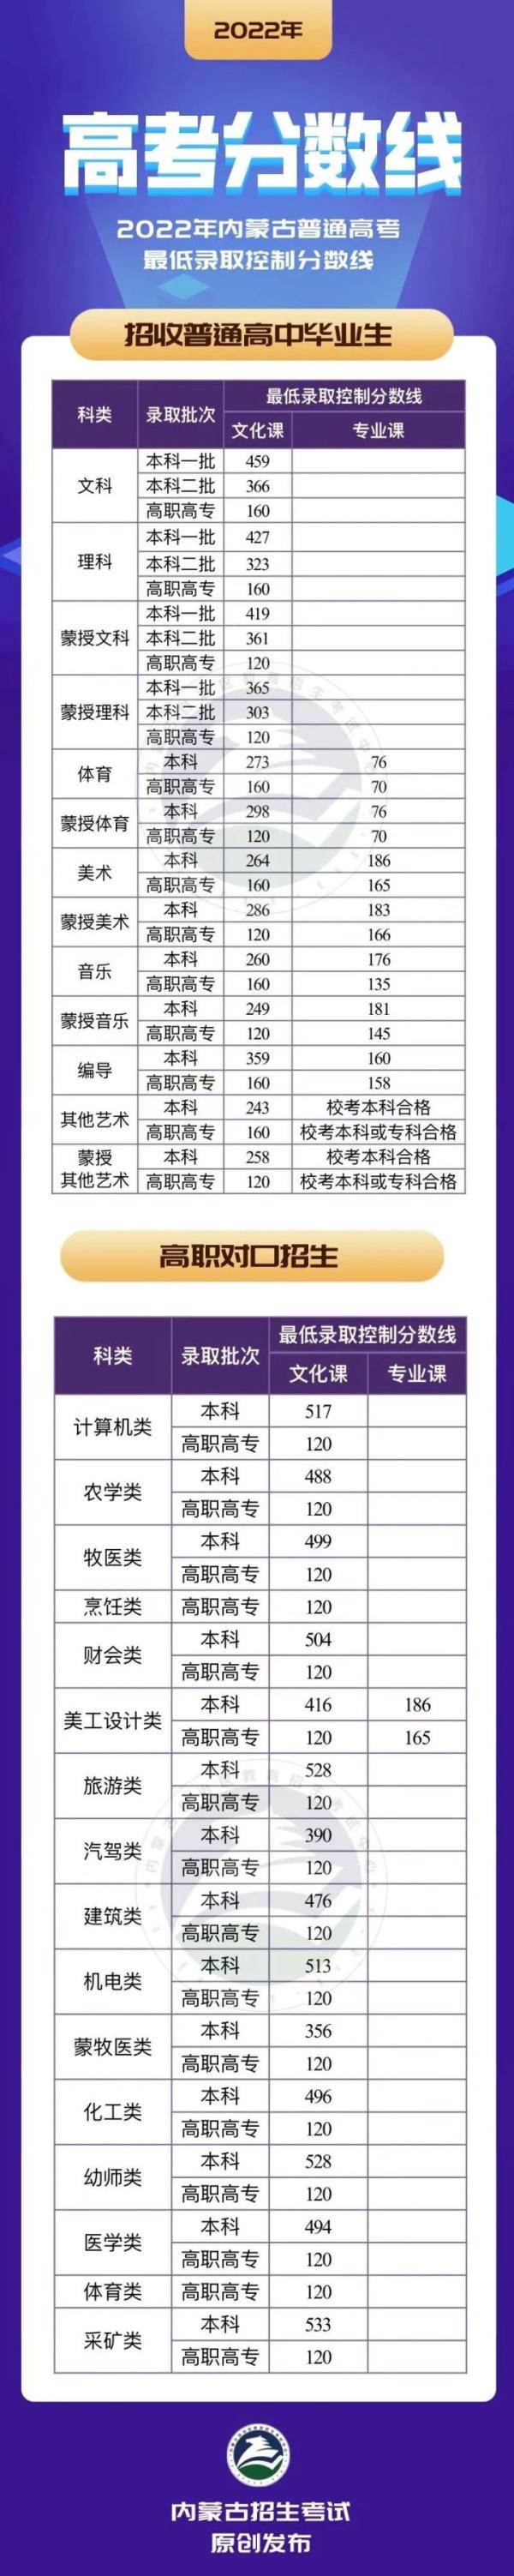 黑龙江省2020年成考录取分数线_黑龙江成考录取分数线2019